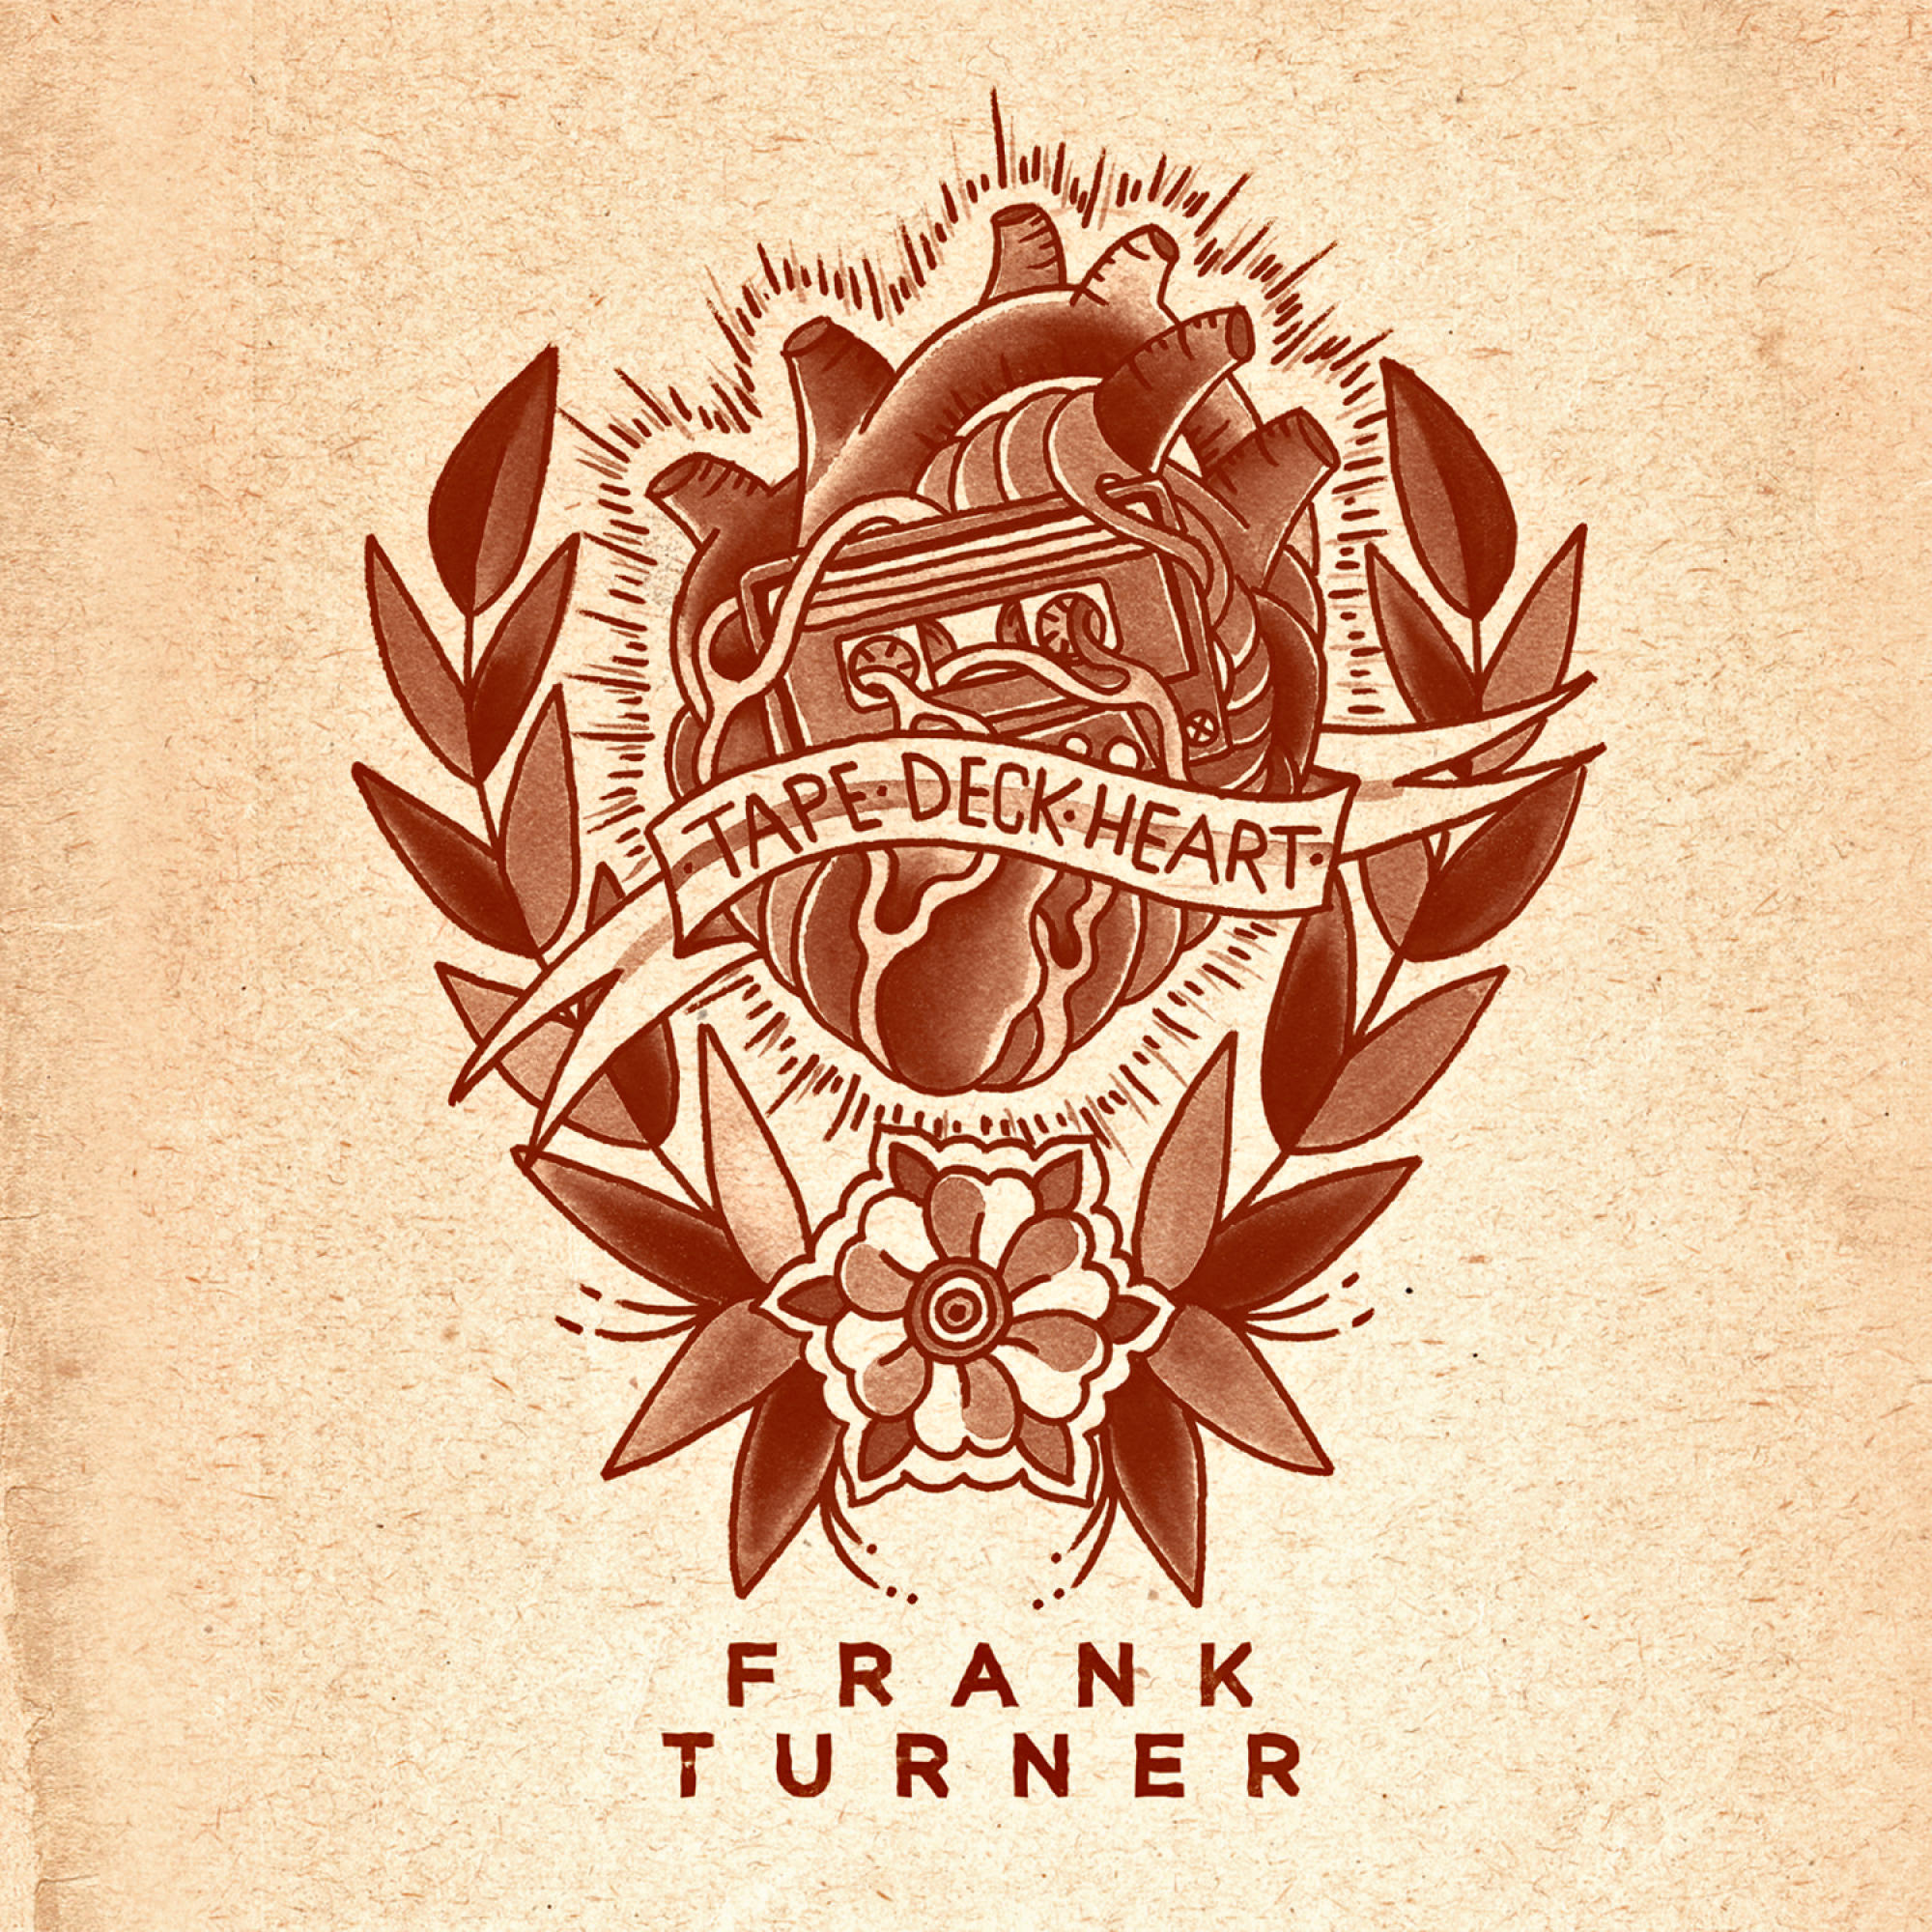 Frank HEART DECK Turner - (CD) TAPE -